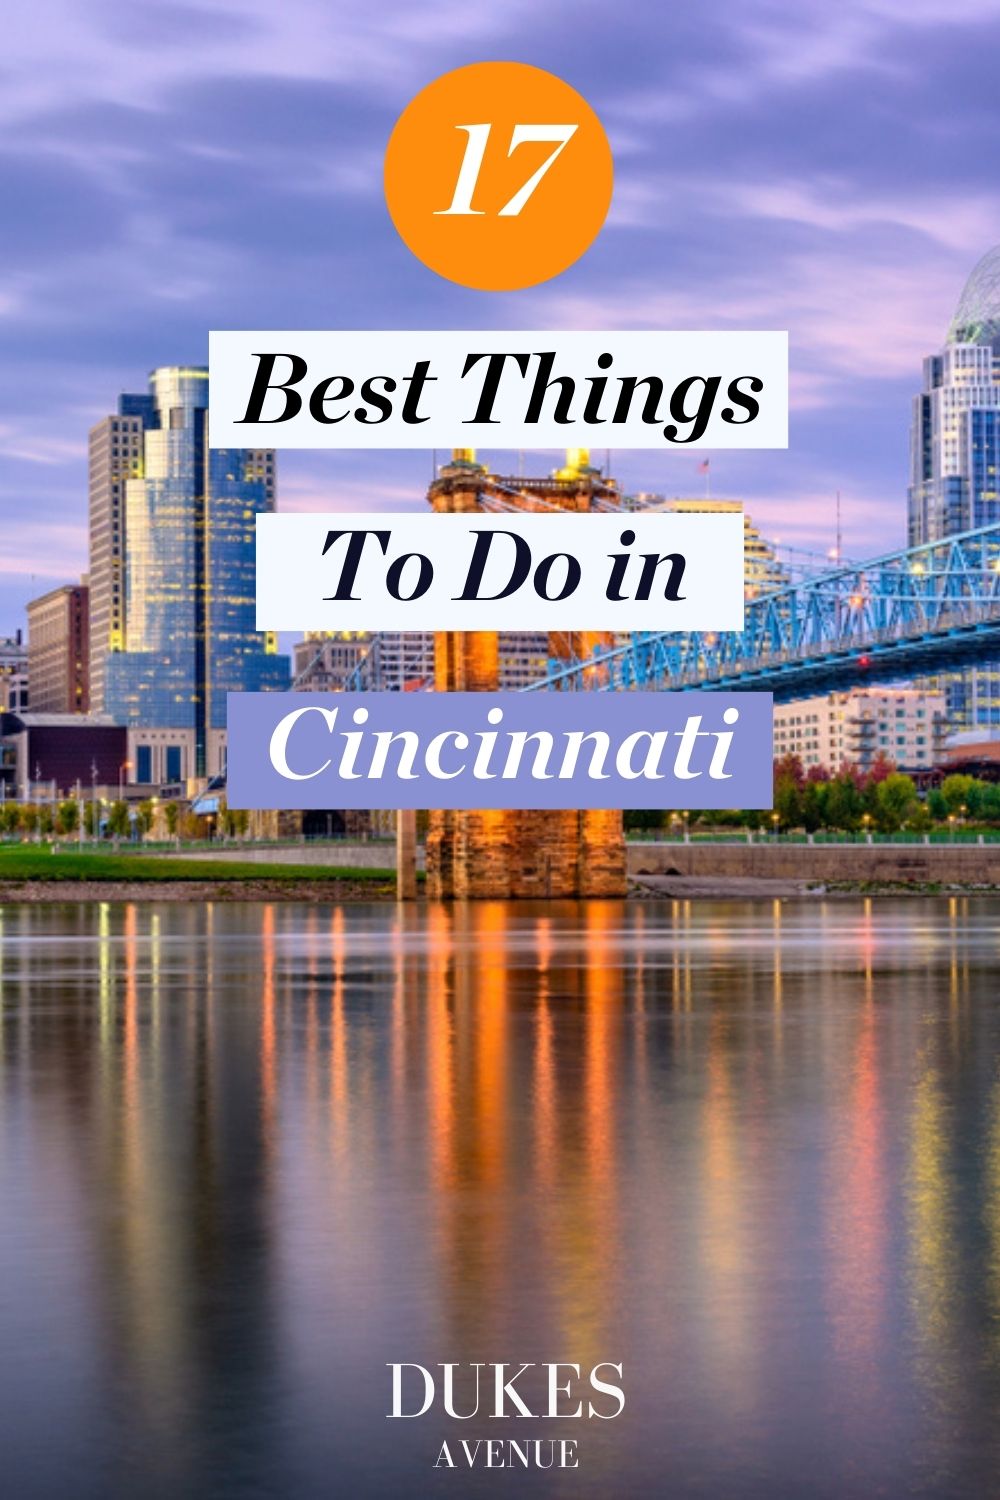 Aerial shot of Cincinnati skyline with text overlay '17 Best Things To Do In Cincinnati'